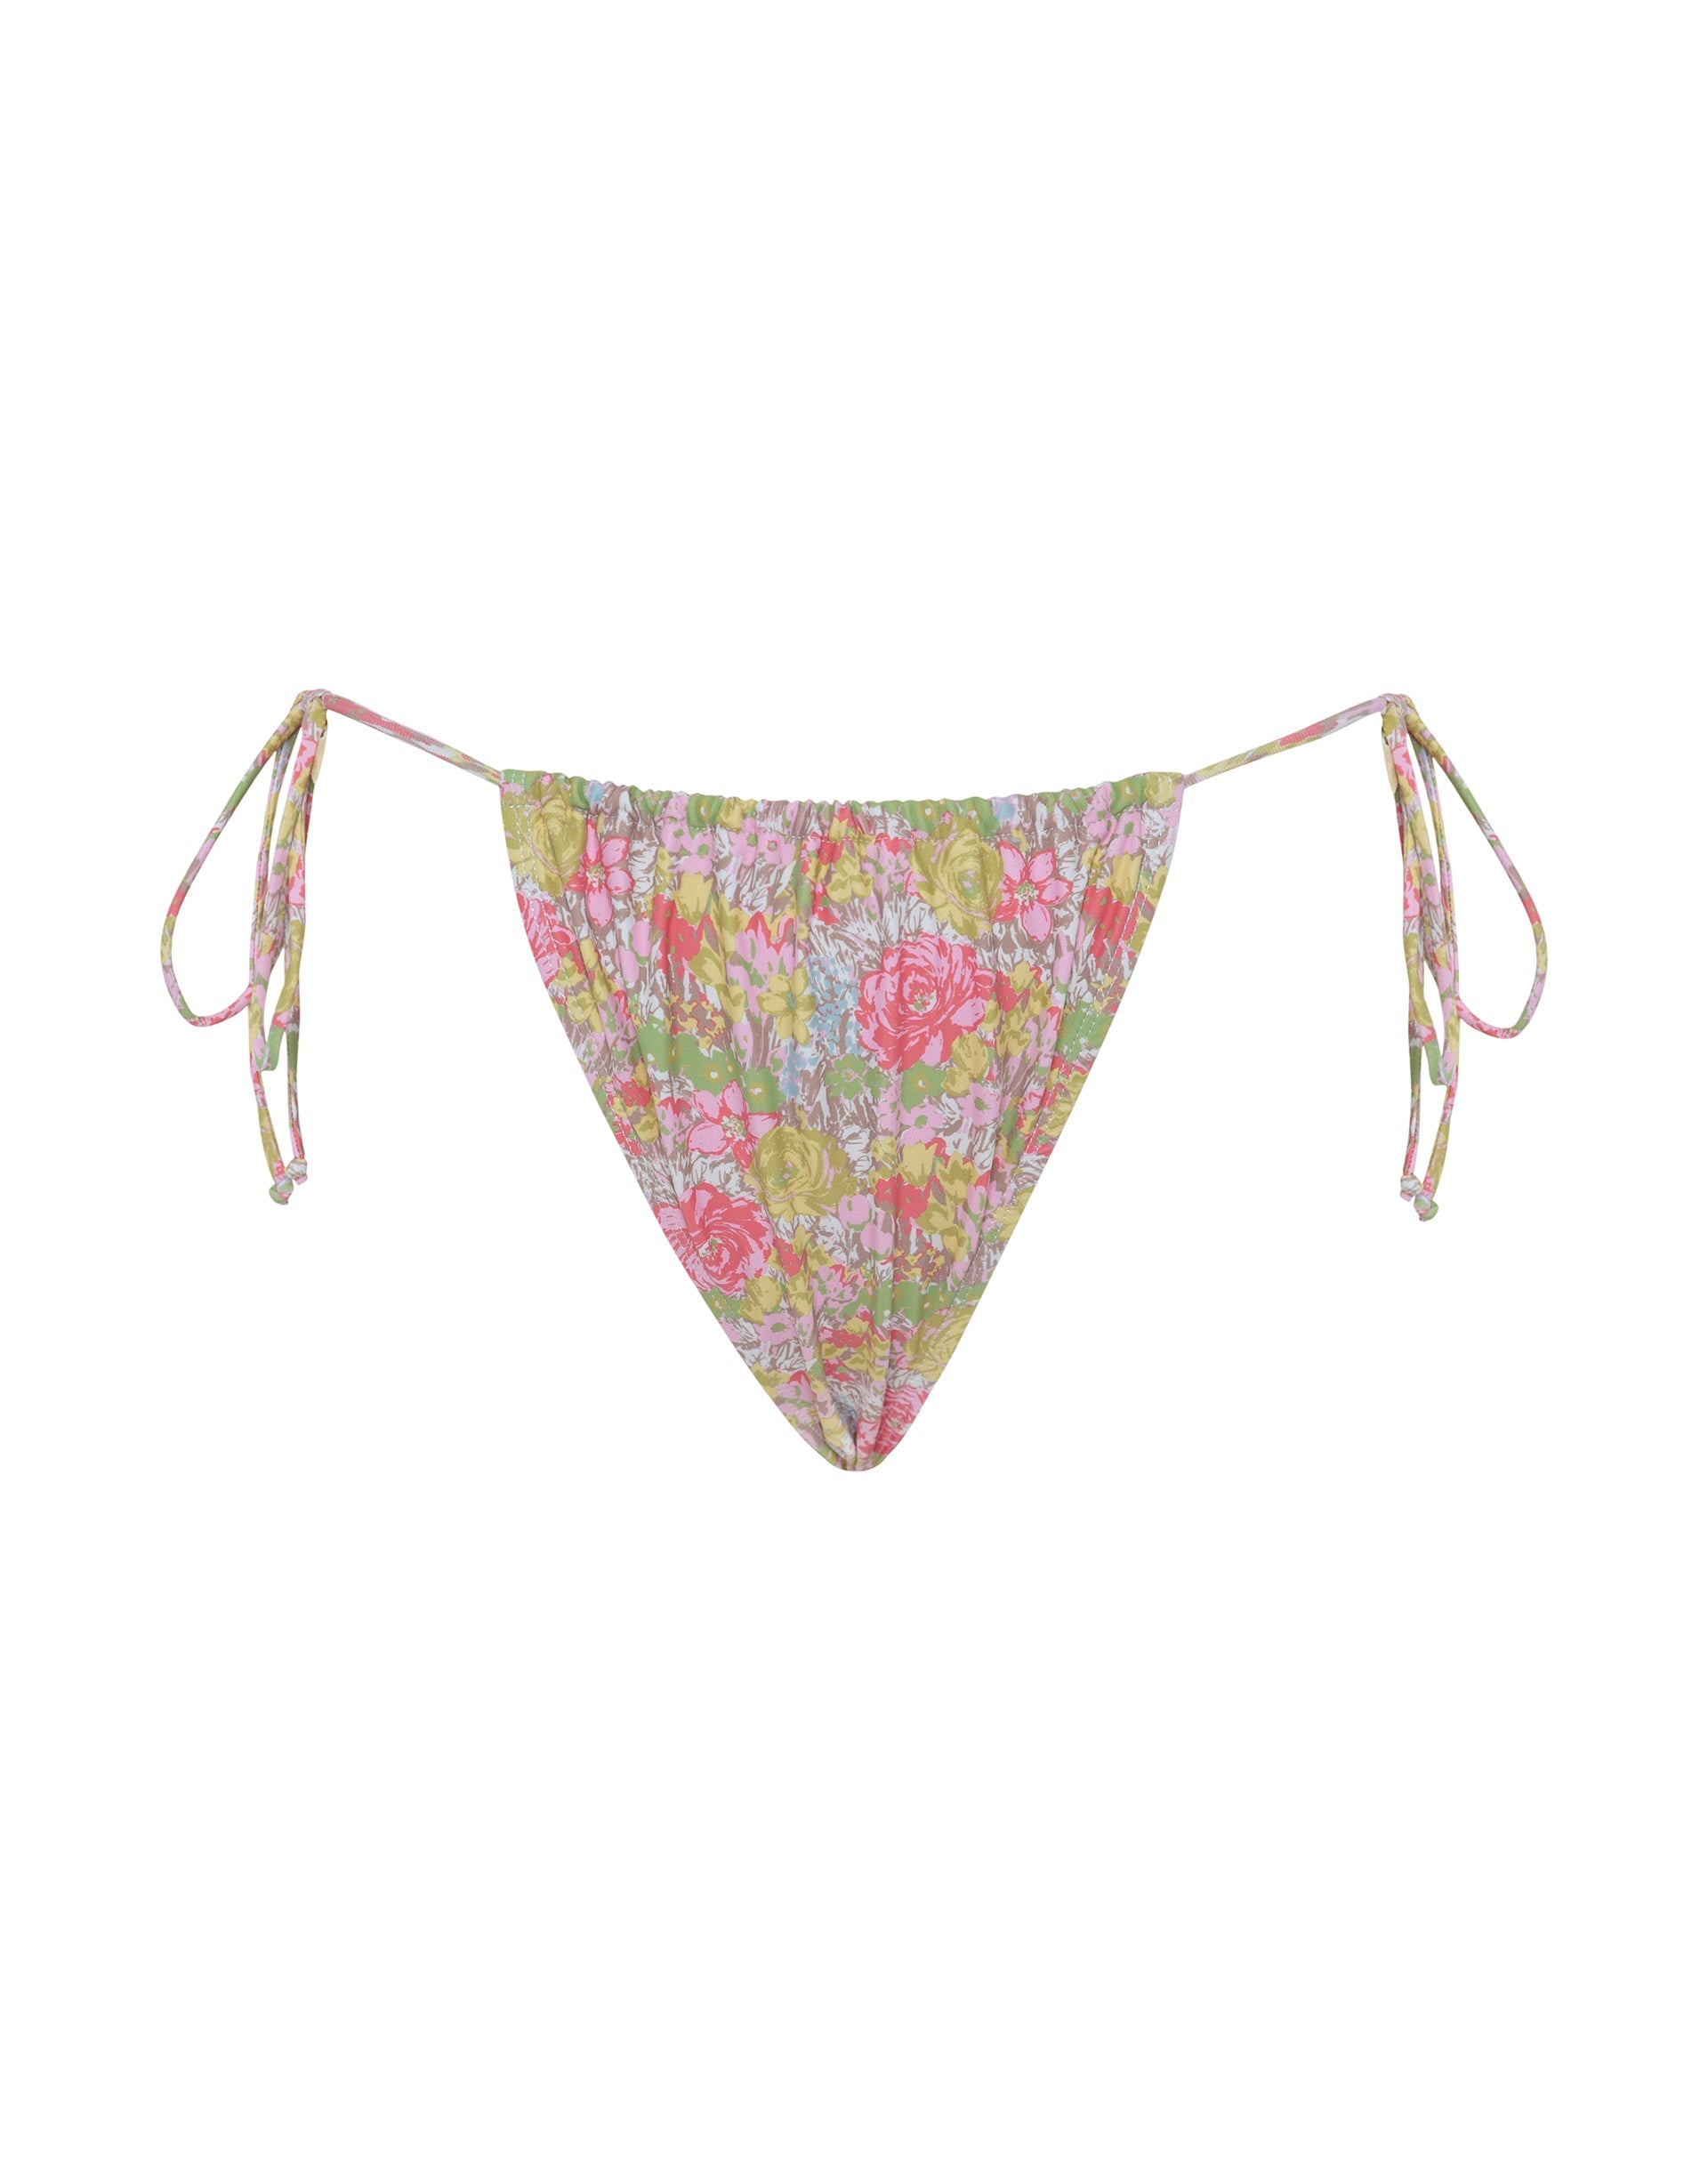 Imagen de la braguita de bikini Leyna en rosa floral abstracto BAÑADORES